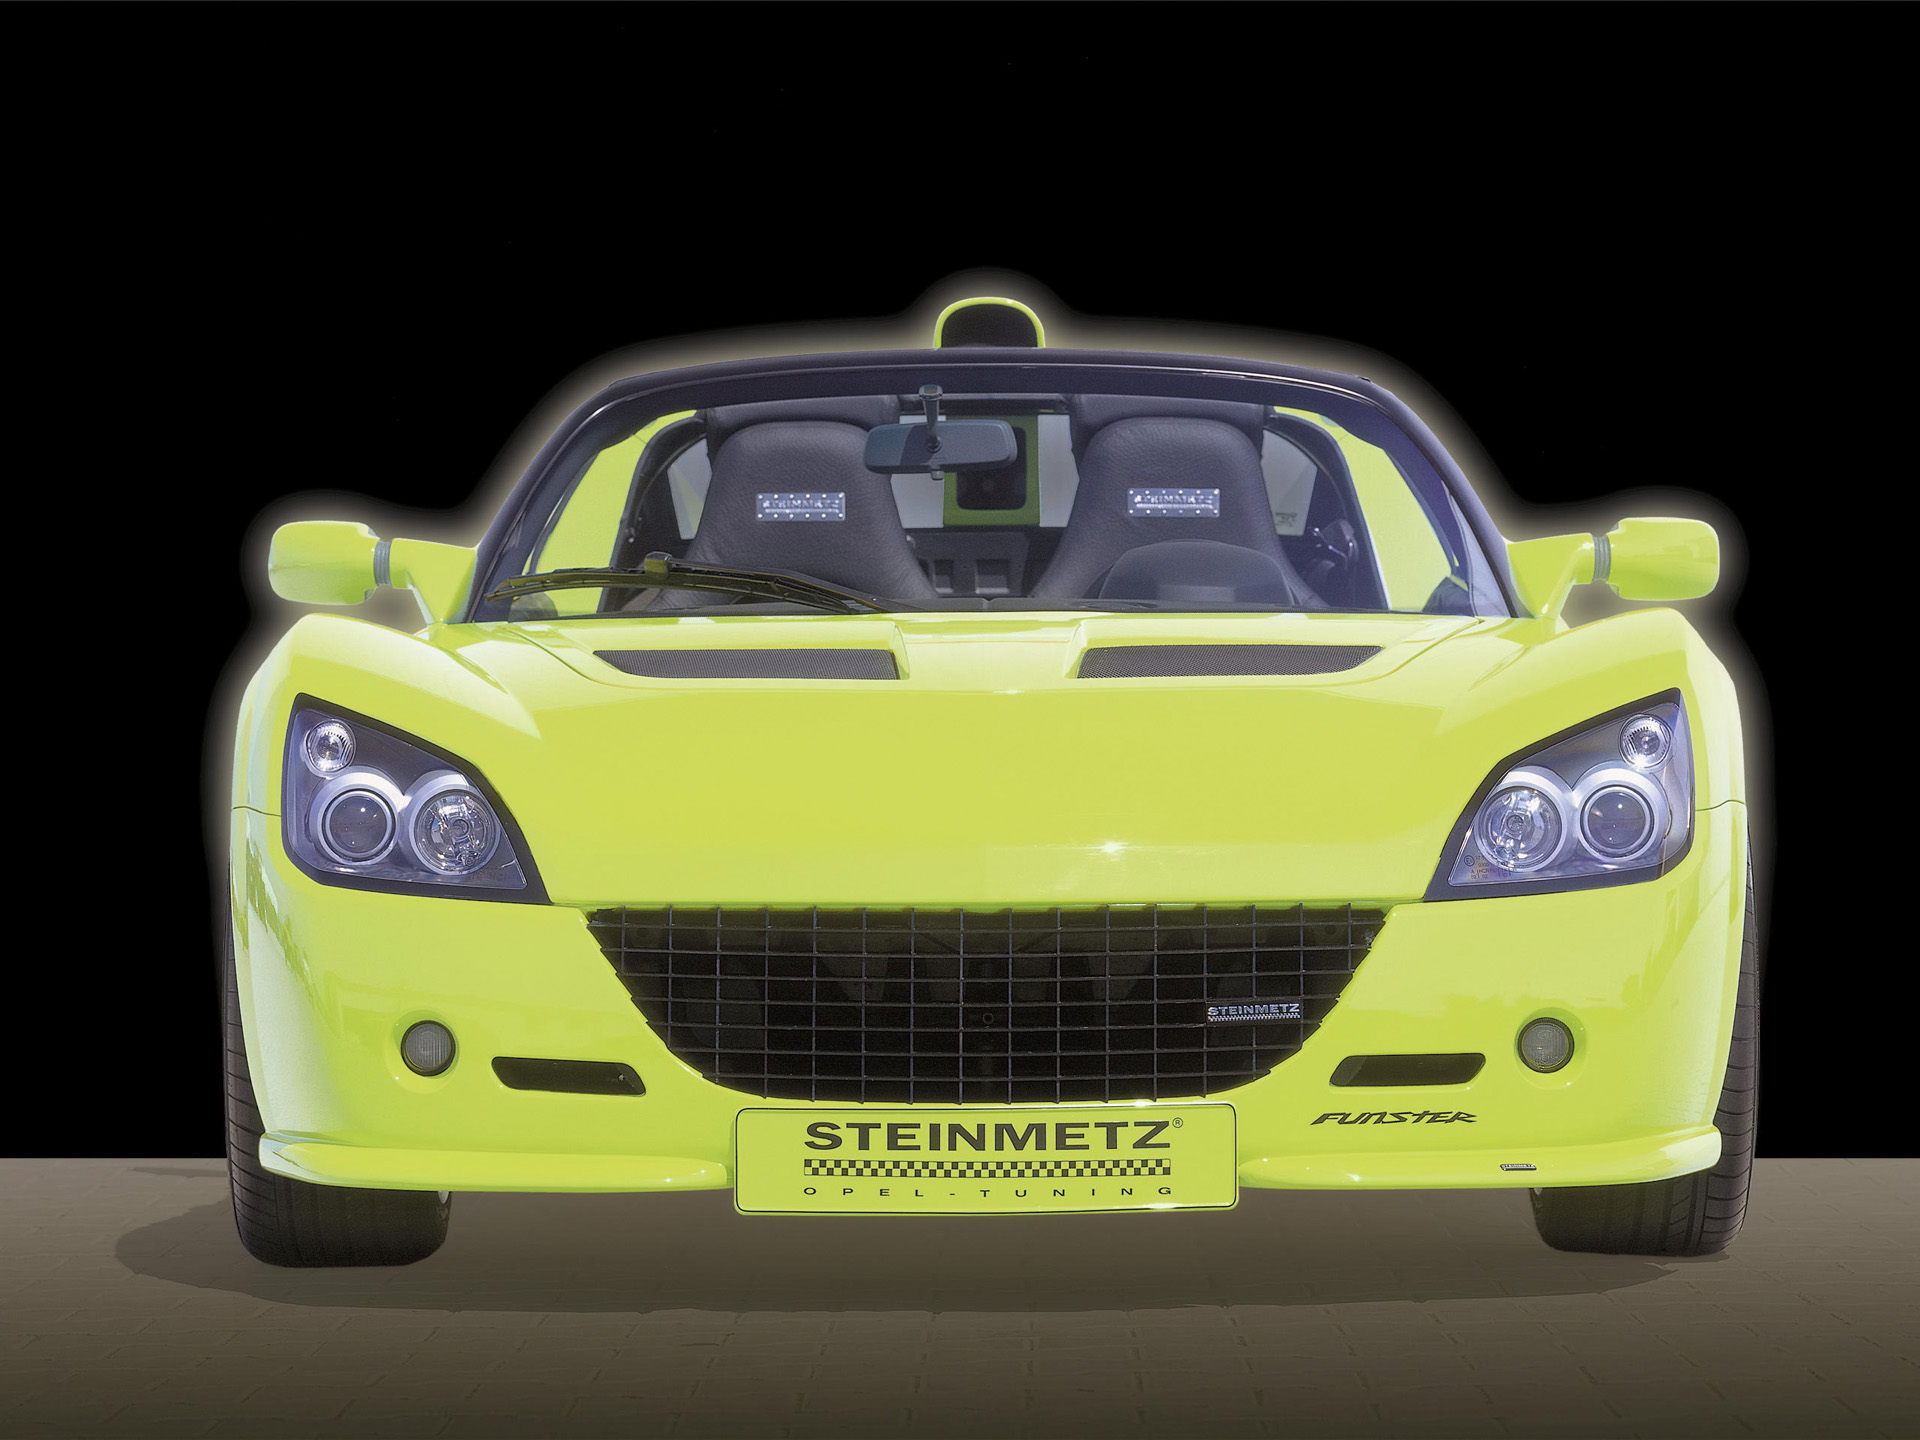 2001, Steinmetz, Opel, Funster, Concept, Supercar Wallpaper